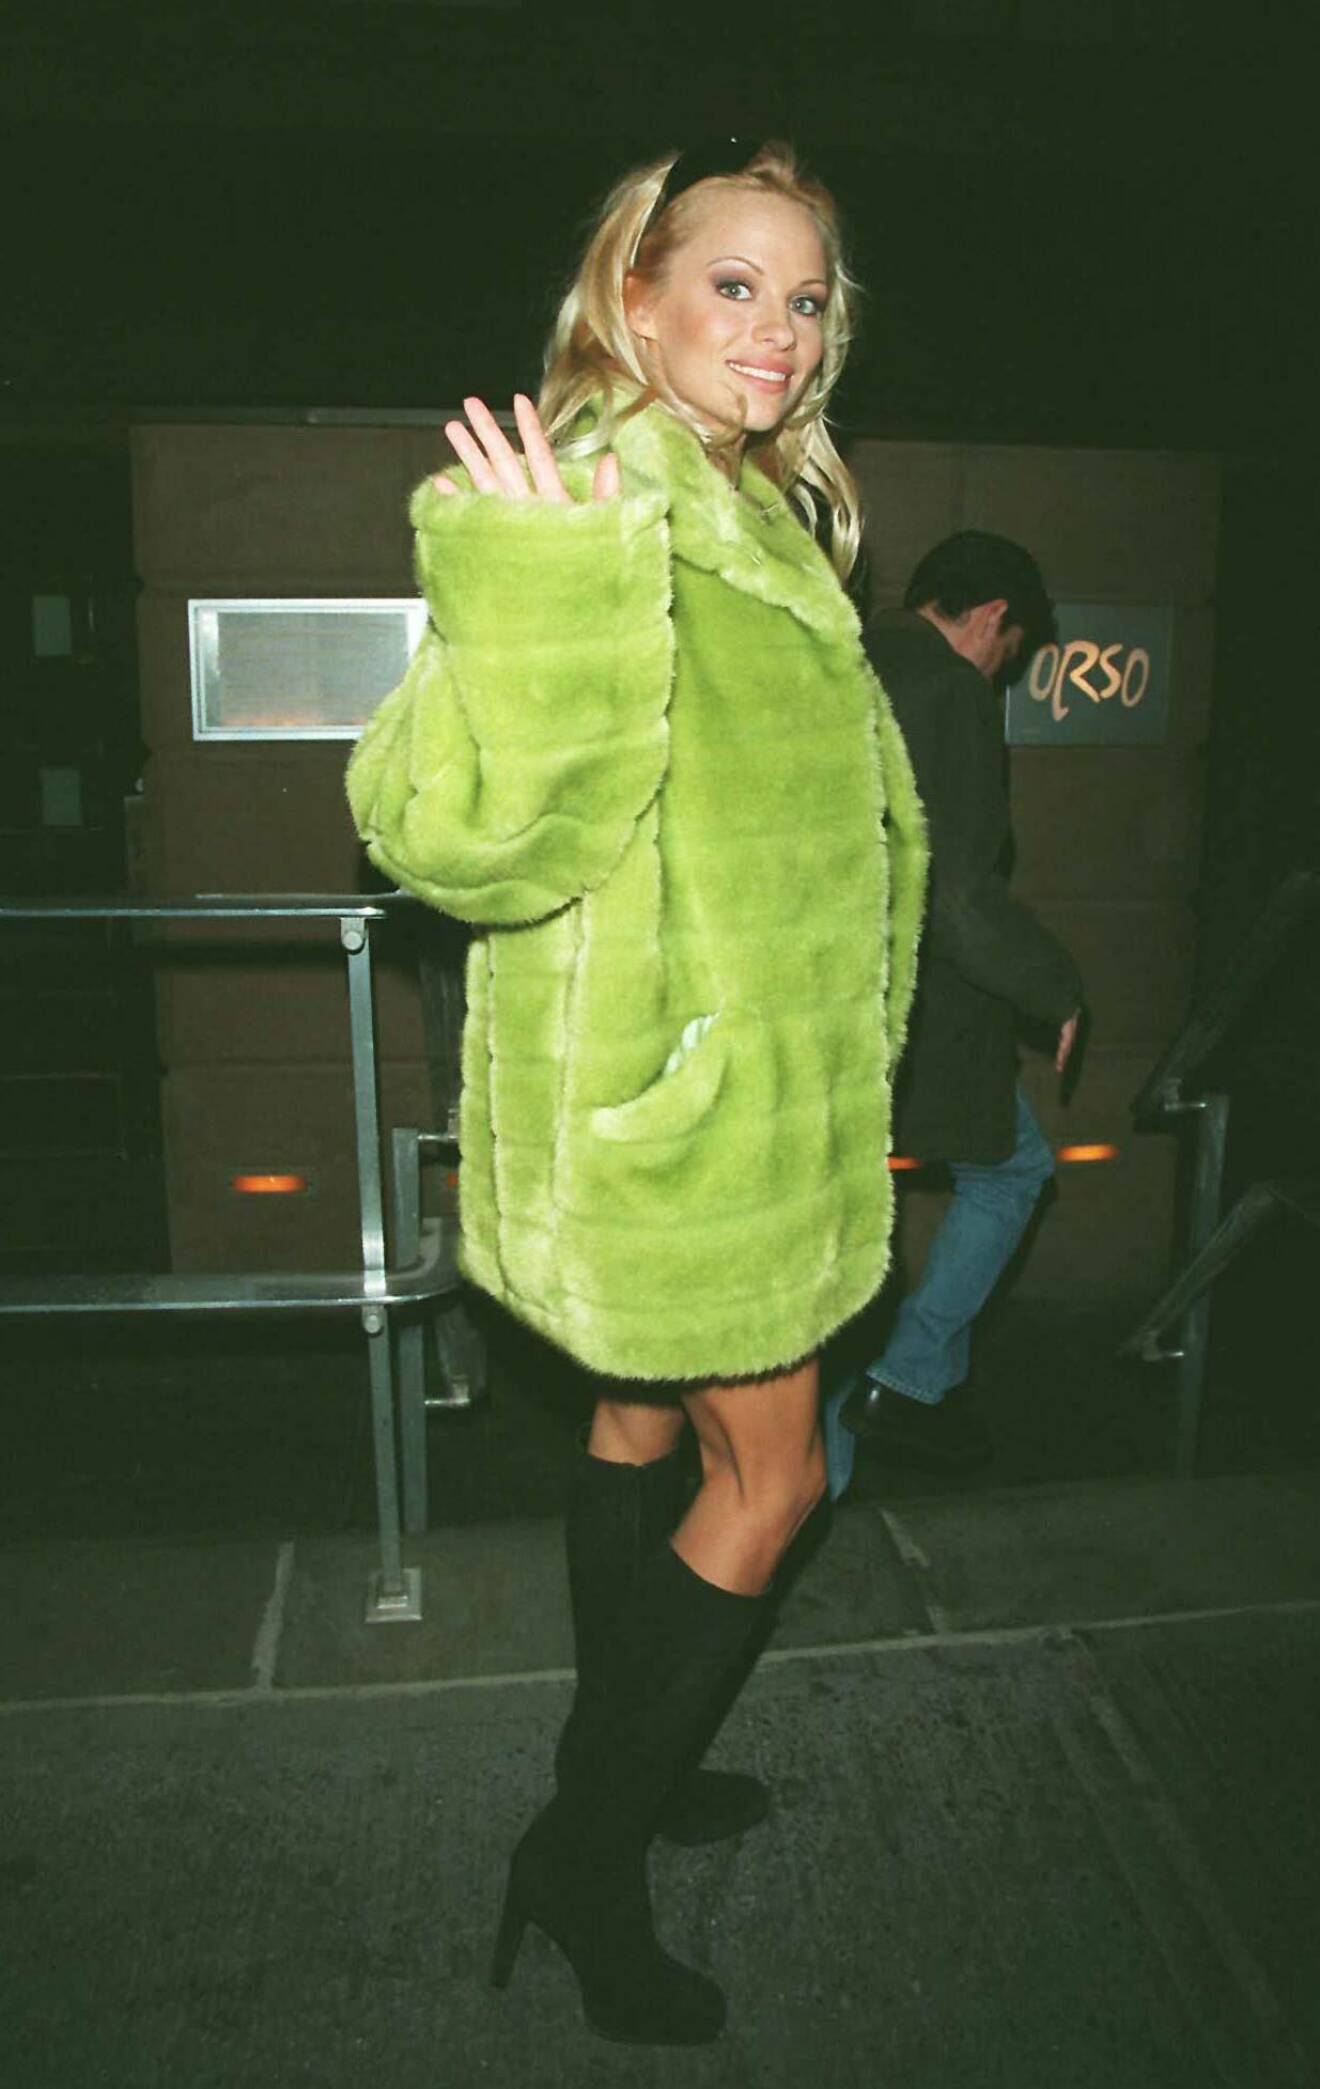 Pamela Anderson på väg till middag på restaurangen Orso i New York, 1997.